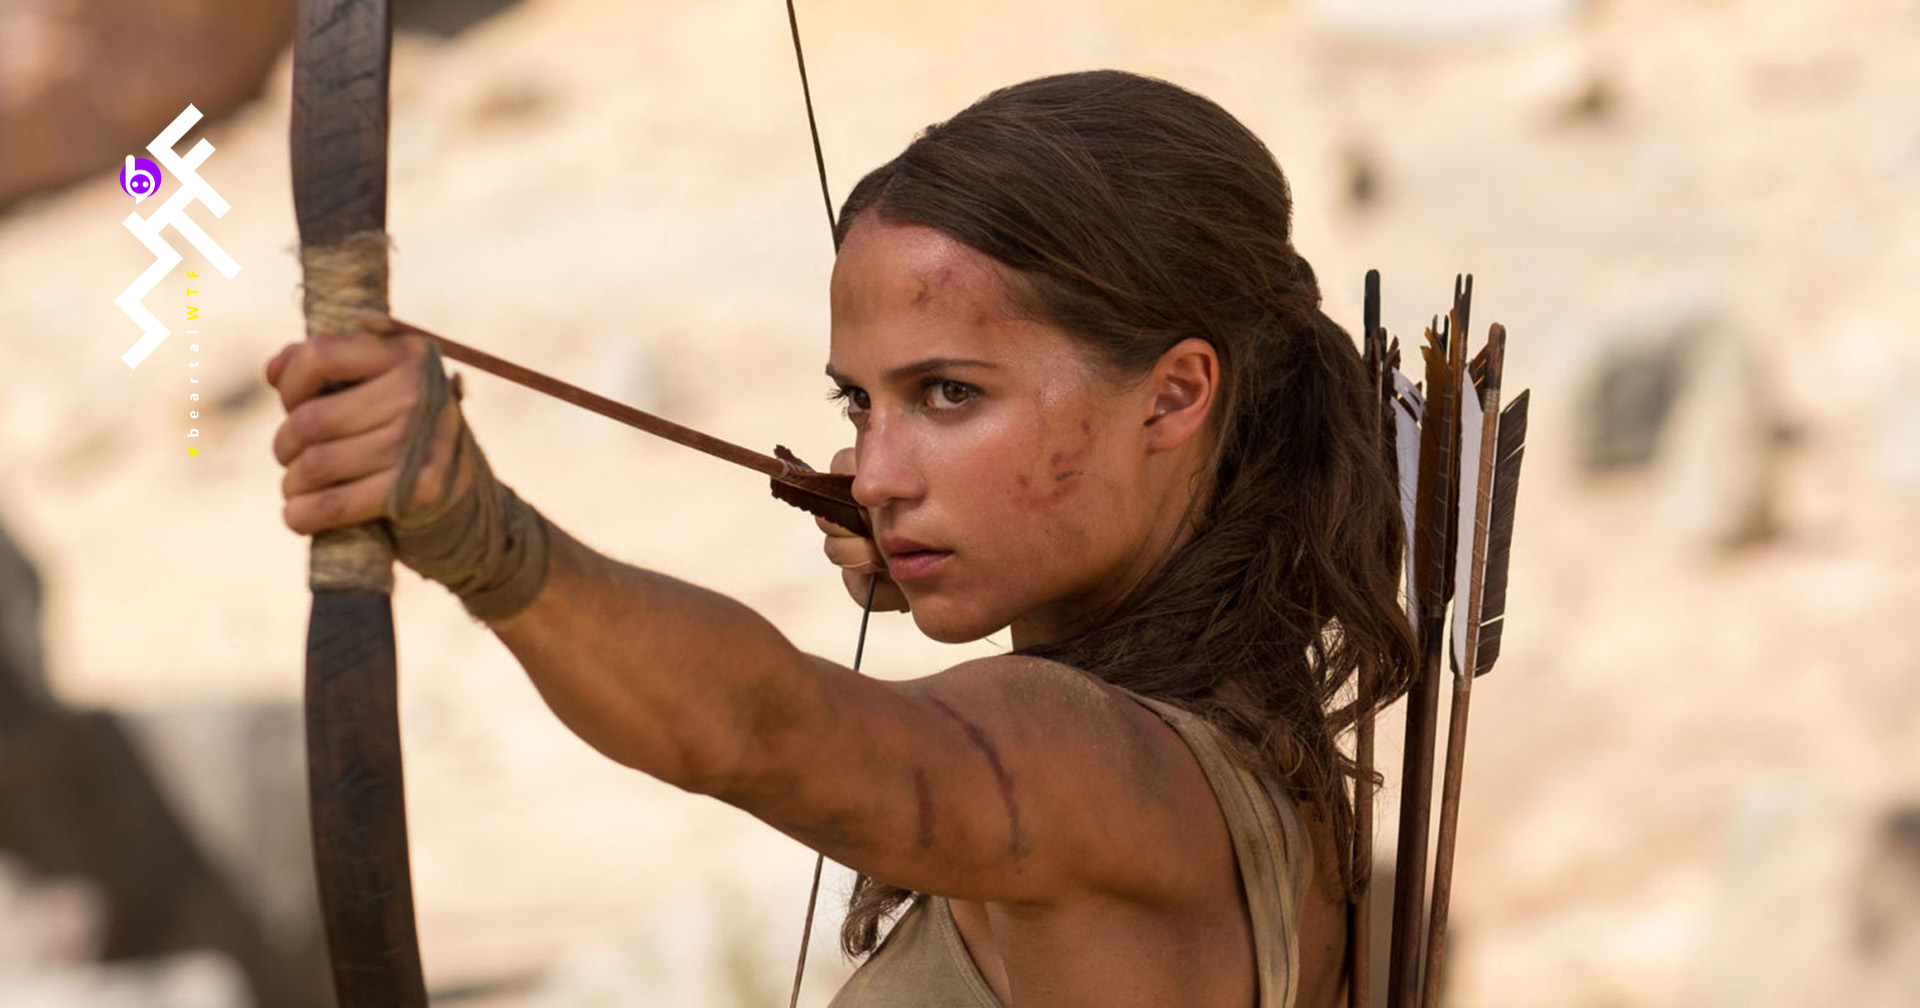 Tomb Raider 2 อาจเริ่มถ่ายในปี 2021